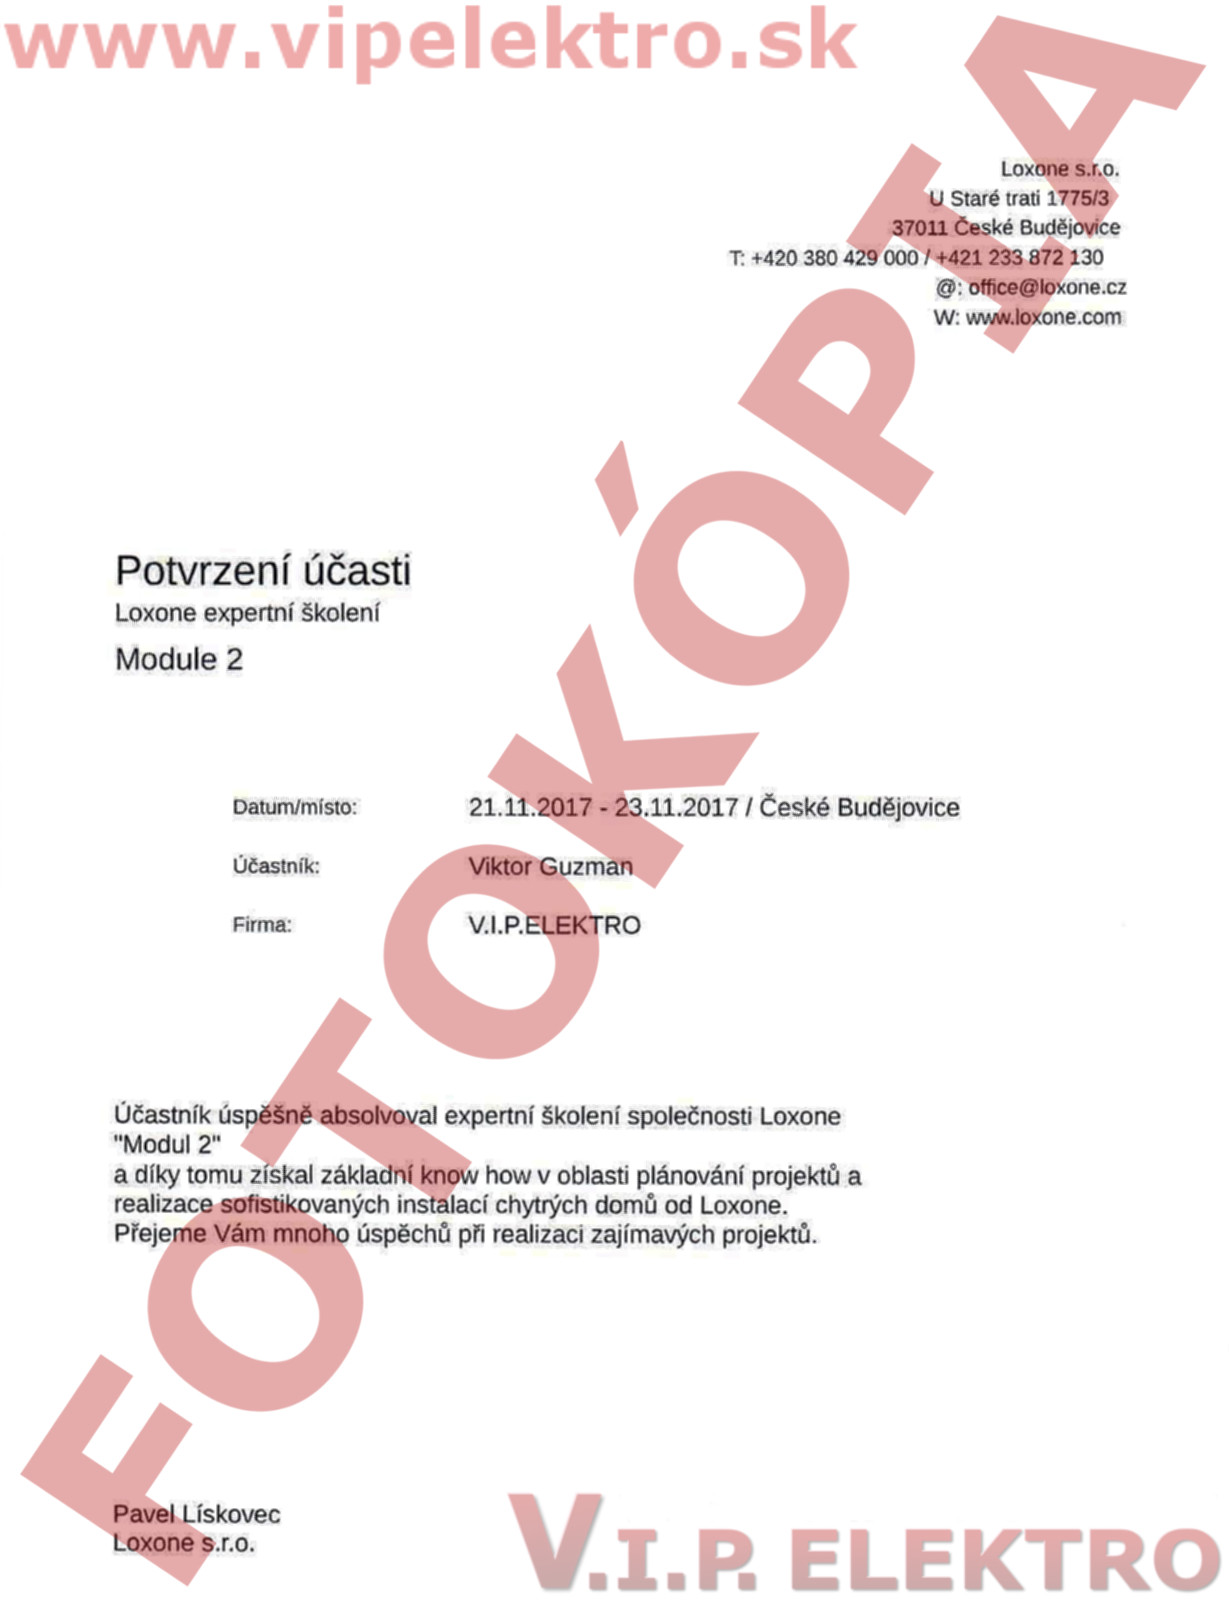 Certifikácia LOXONE - Potvrdenie účasti na školení pre Viktora Guzmana